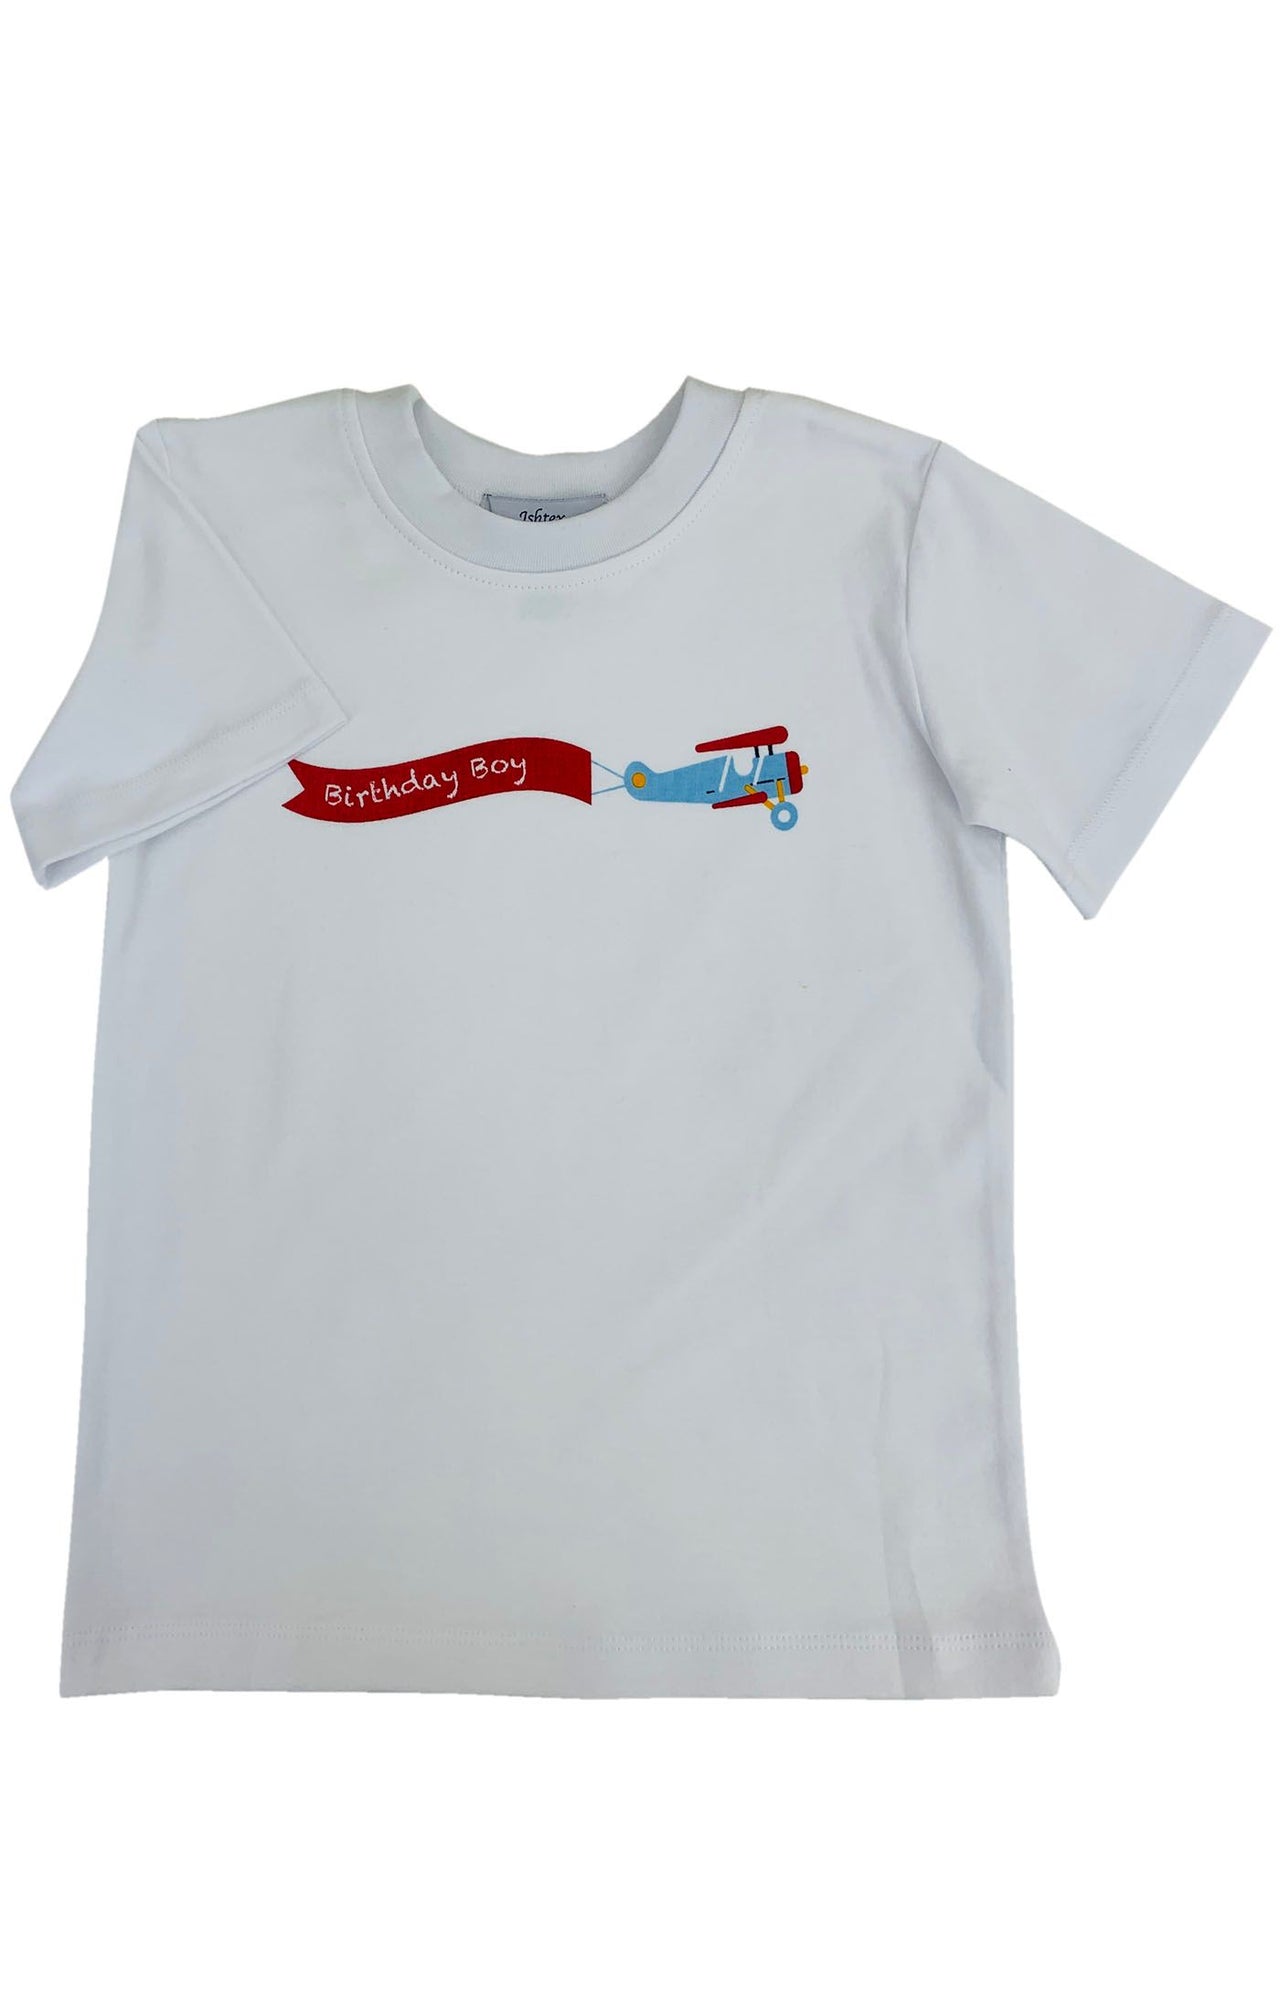 Ishtex Birthday Boy T-Shirt 2S084306